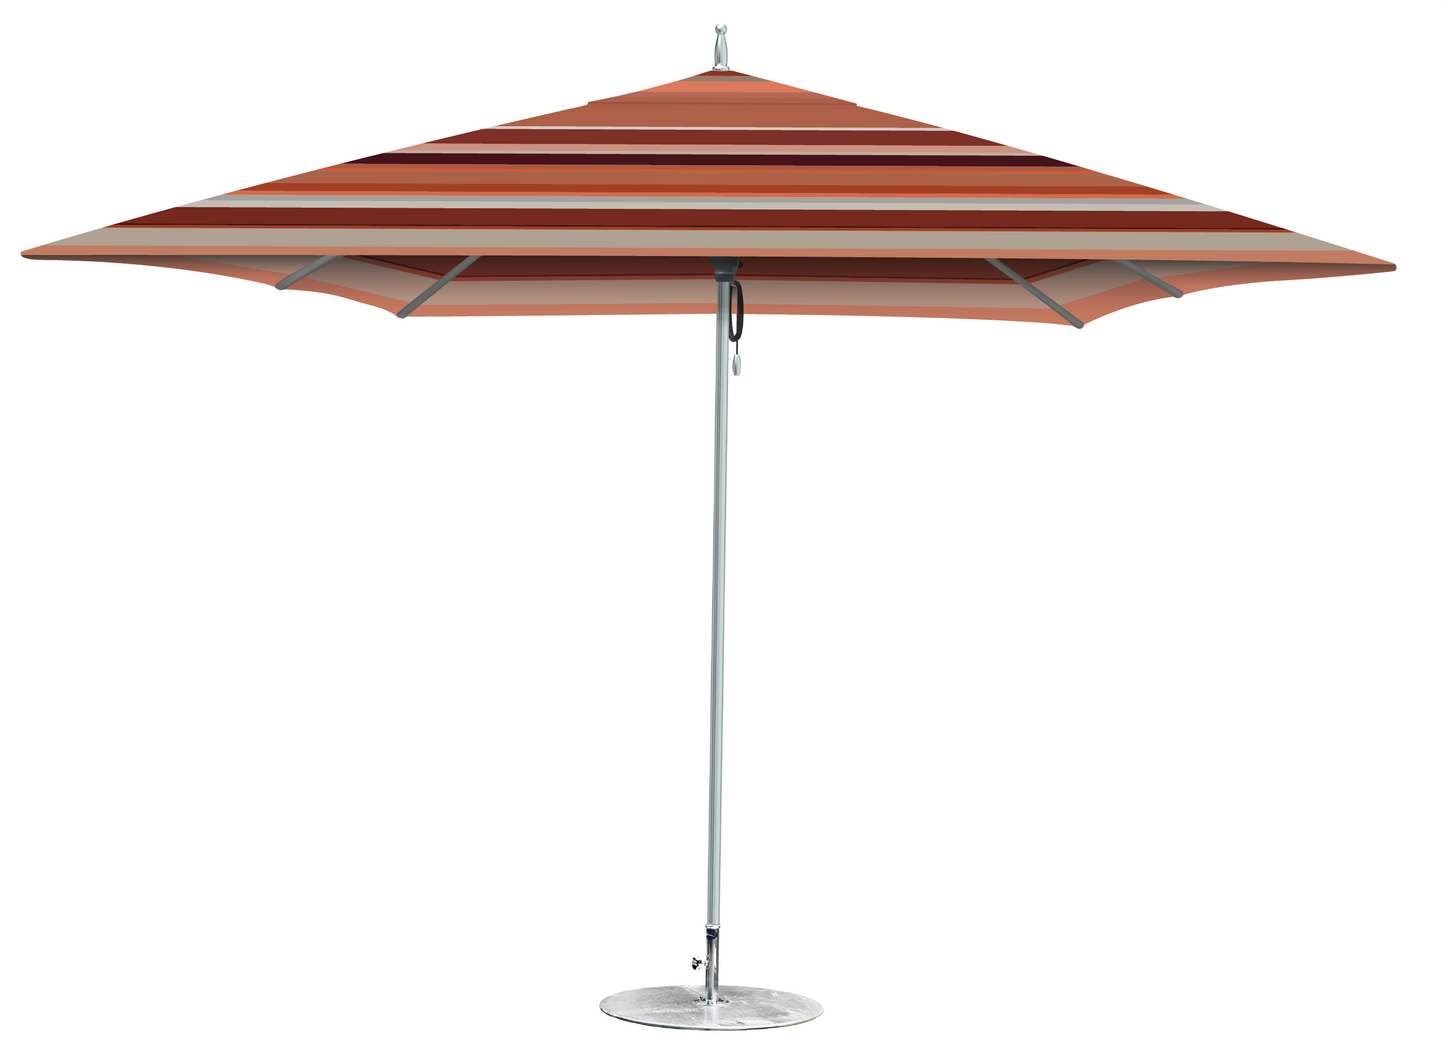 Tuuci 7.5' Patio Umbrella